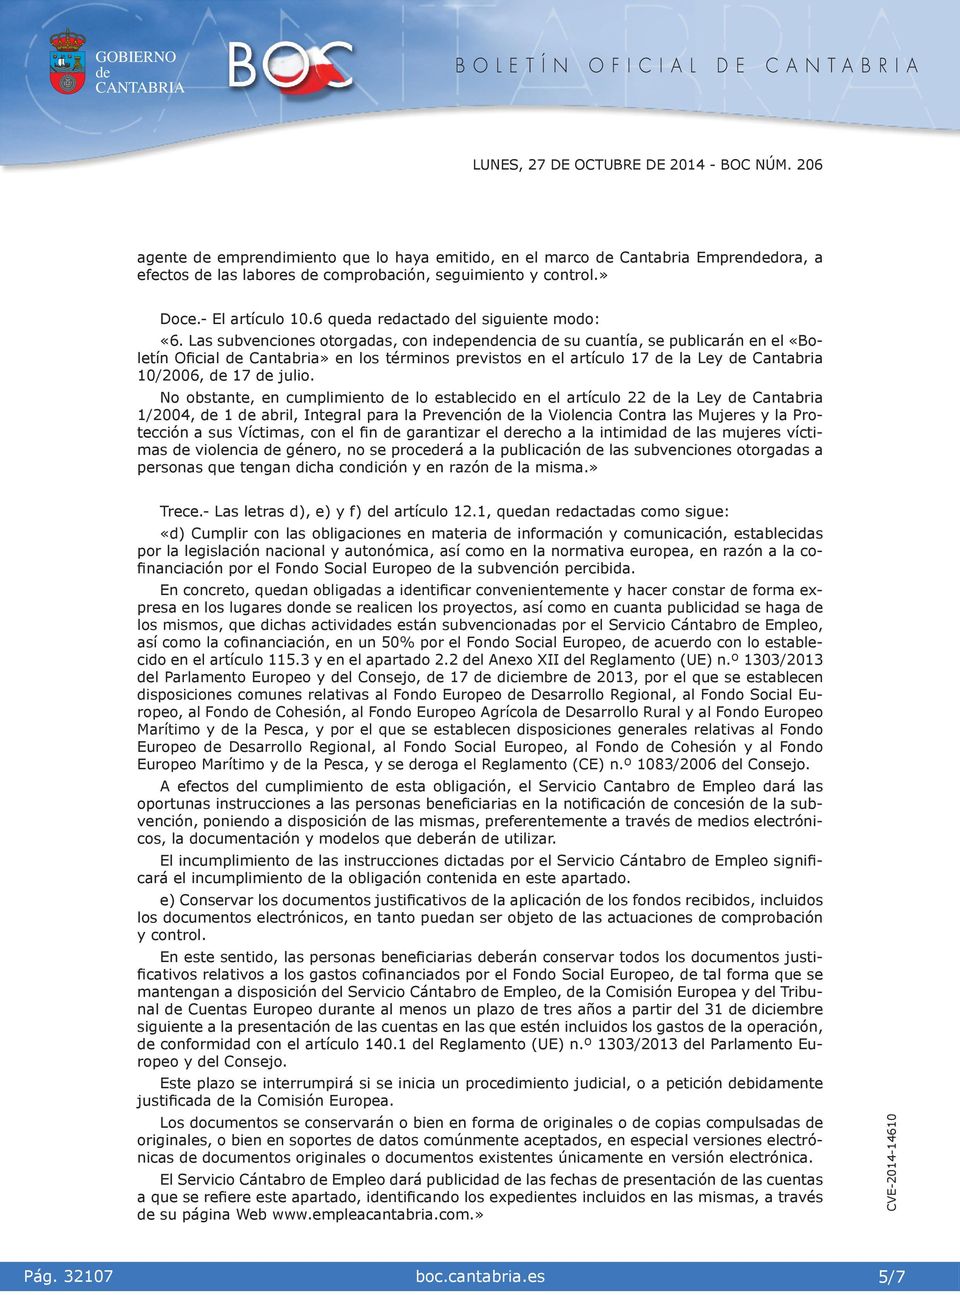 Las subvencones otorgadas, con npennca su cuantía, se publcarán en el «Boletín Ofcal Cantabra» en los térmnos prevstos en el artículo 17 la Ley Cantabra 10/2006, 17 julo.